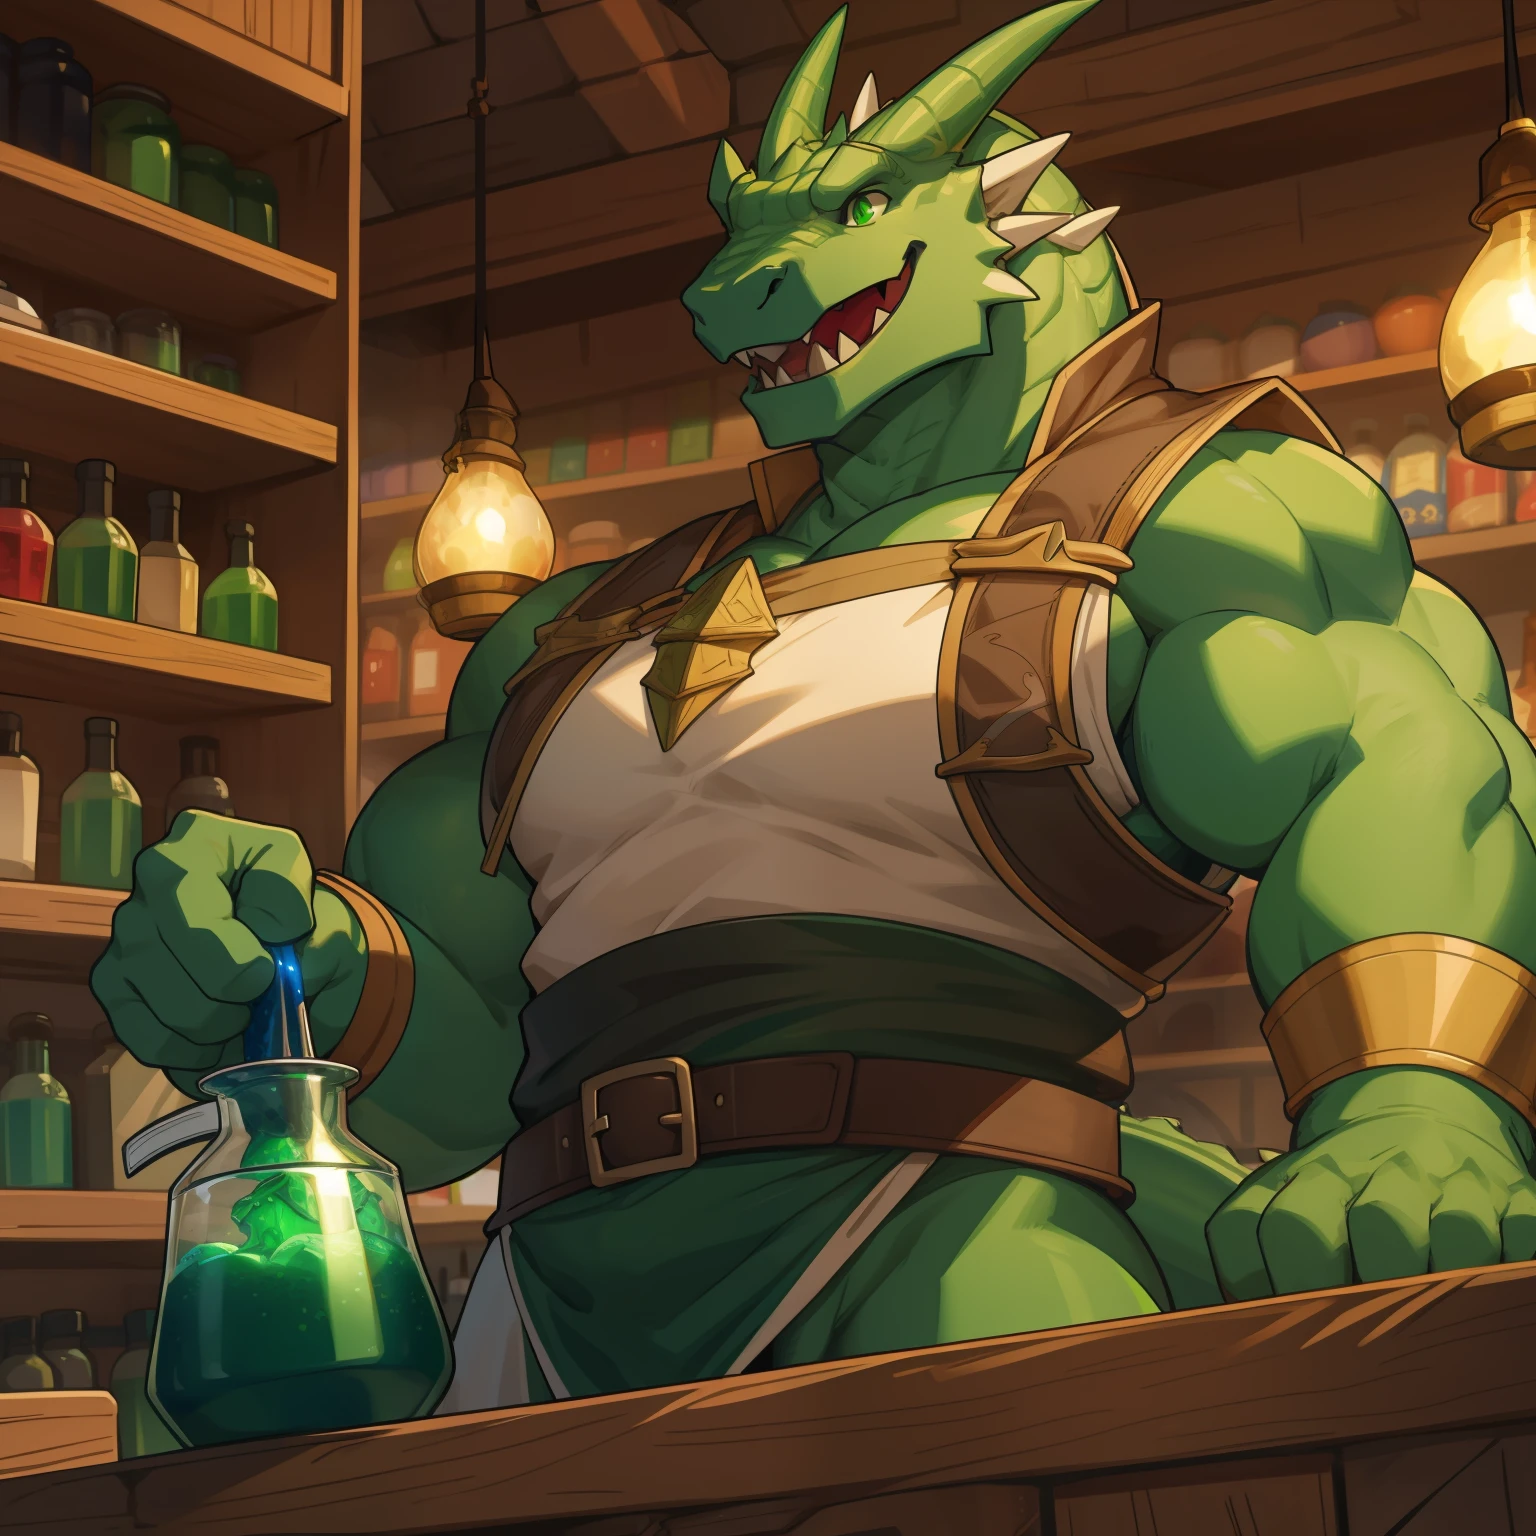 Массивный зеленый дракон в обтягивающей средневековой одежде с массивной выпуклостью приветствует вас с приветливой улыбкой у прилавка в магазине, полном светящихся зелий.